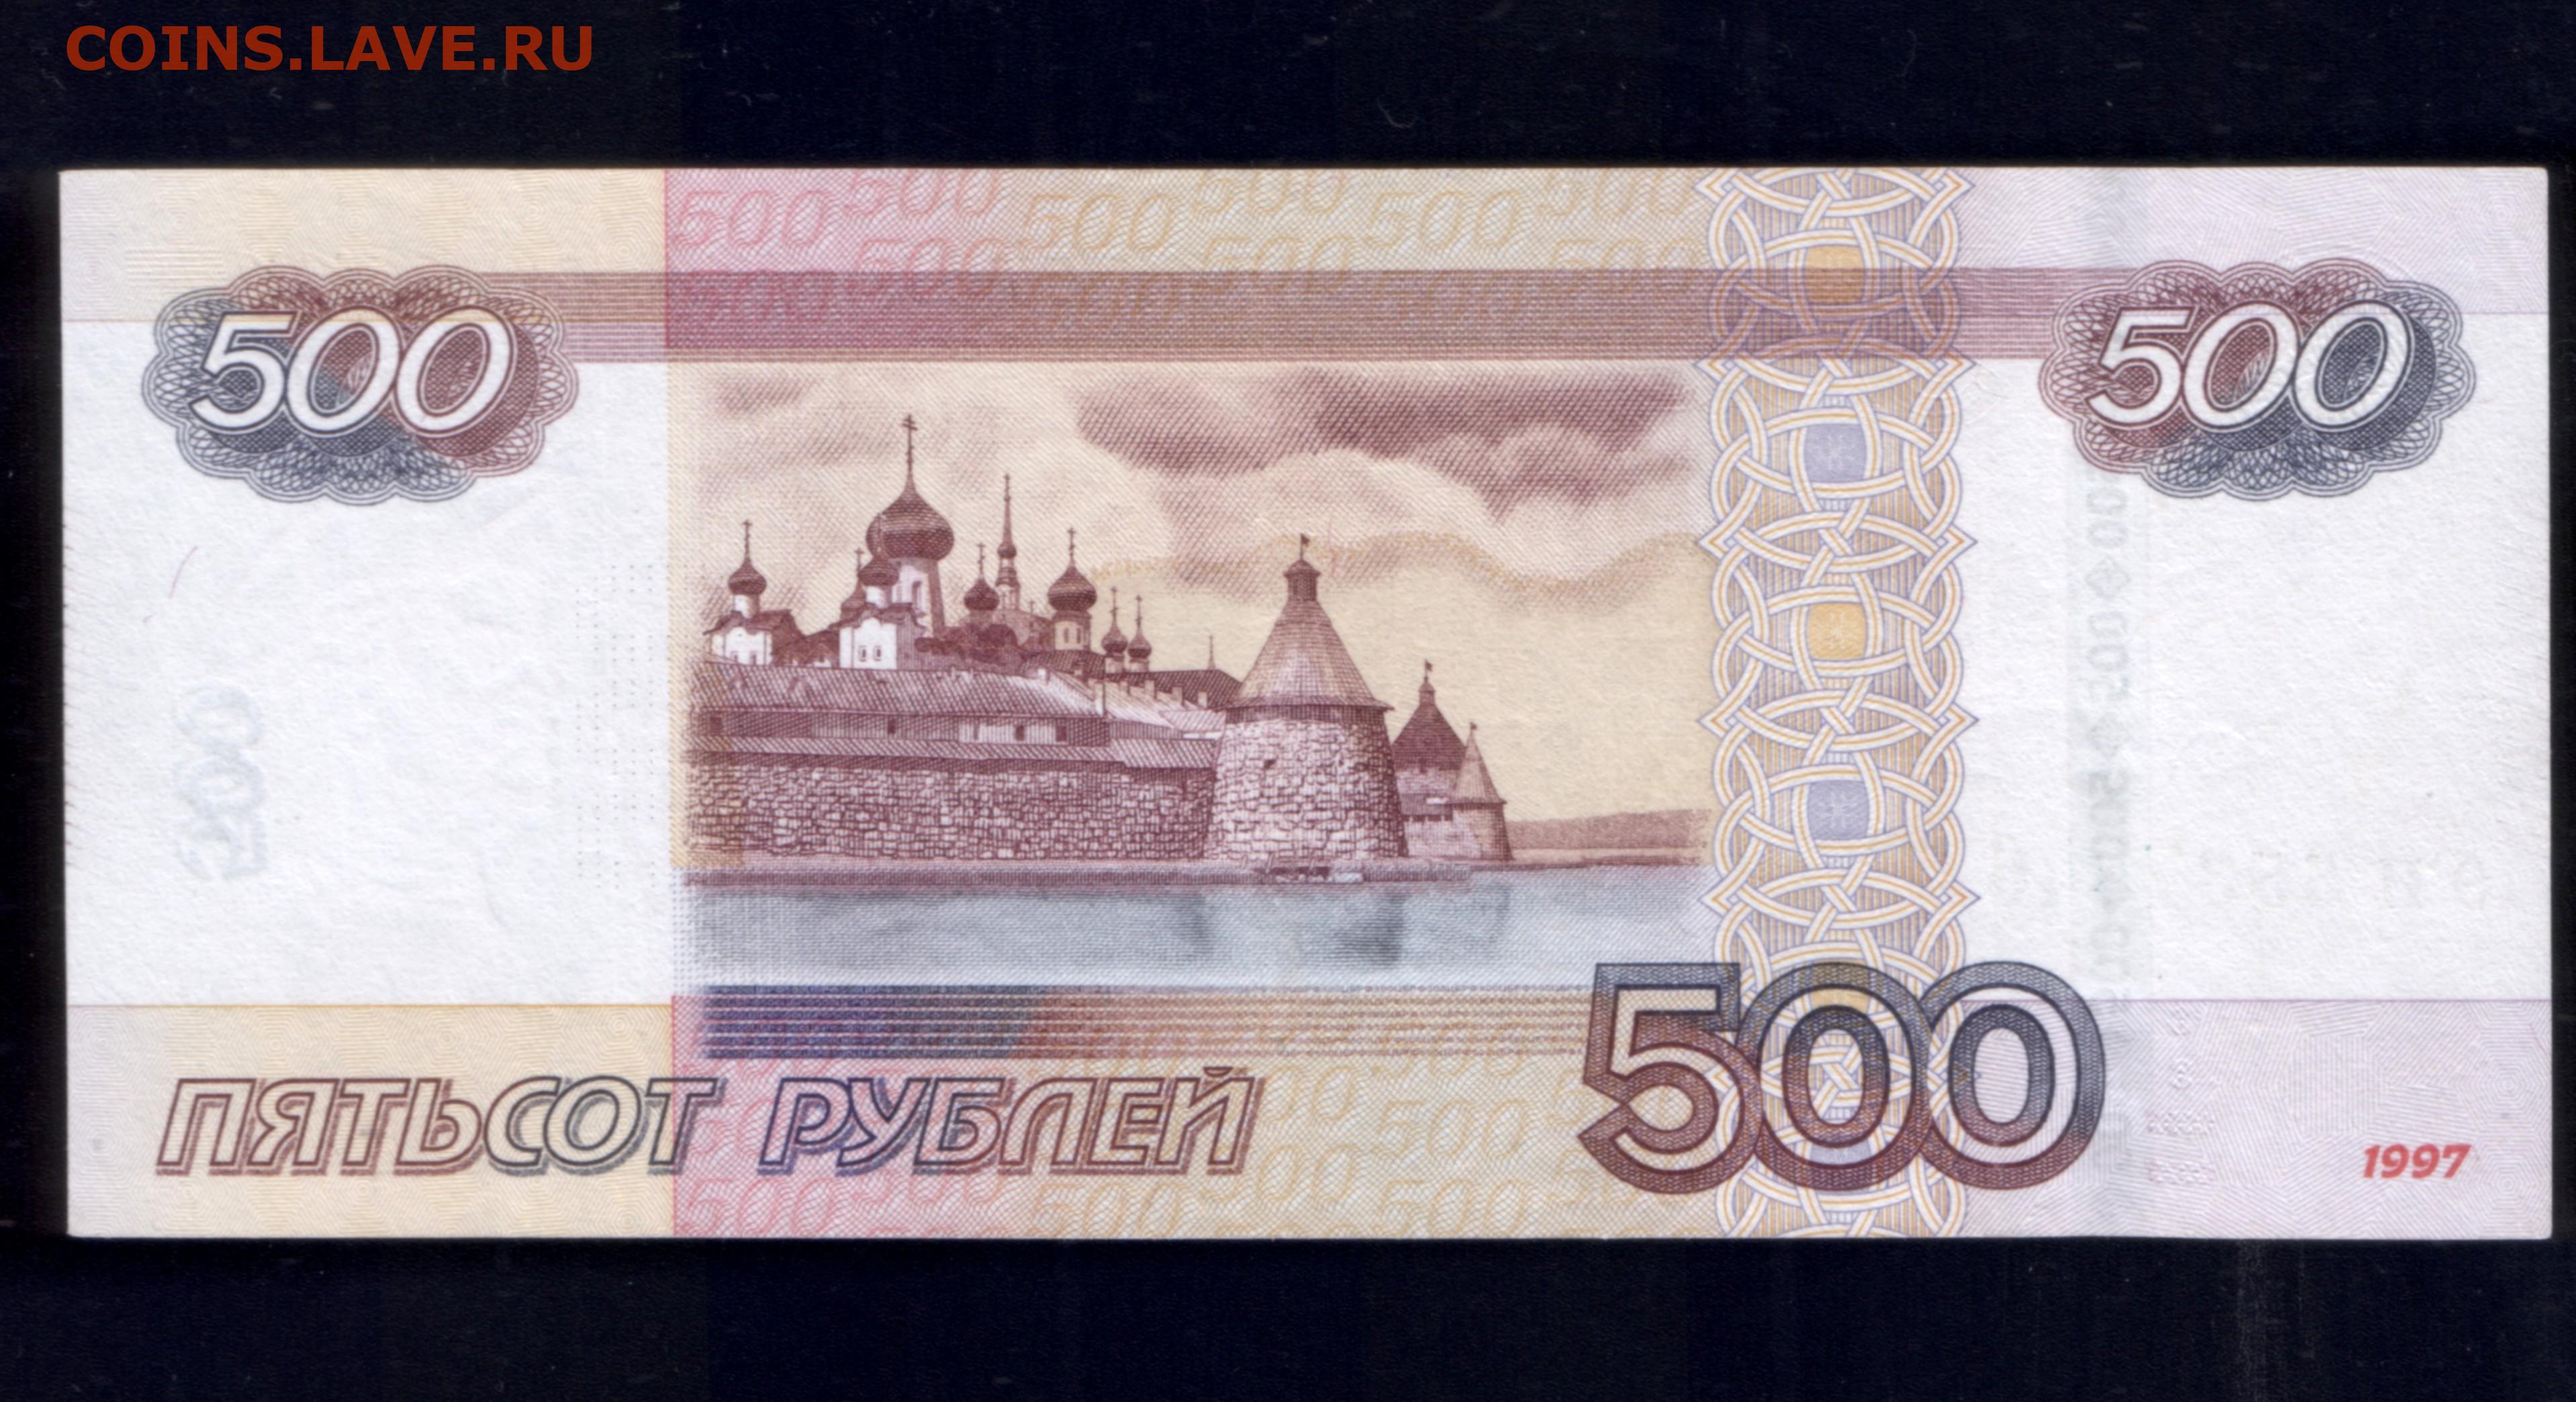 500 рублей хватит. Купюра 500 рублей. Банкнота 500 рублей. Купюра номиналом 500 рублей. 500 Рублевая купюра.